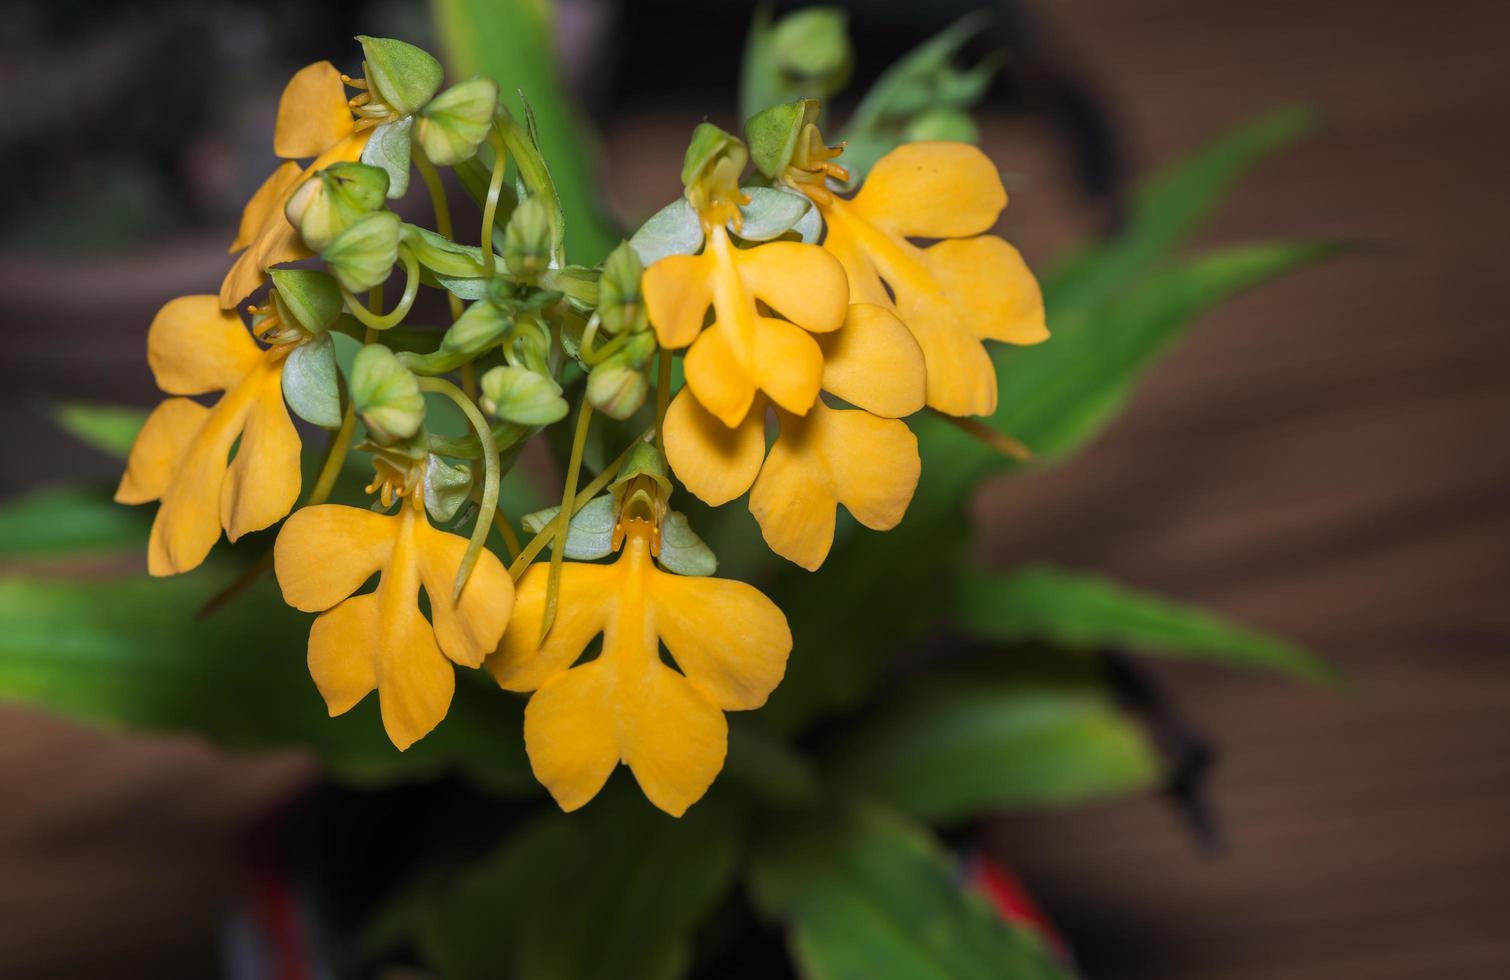 habenaria rodocheila, giallo fiore foto